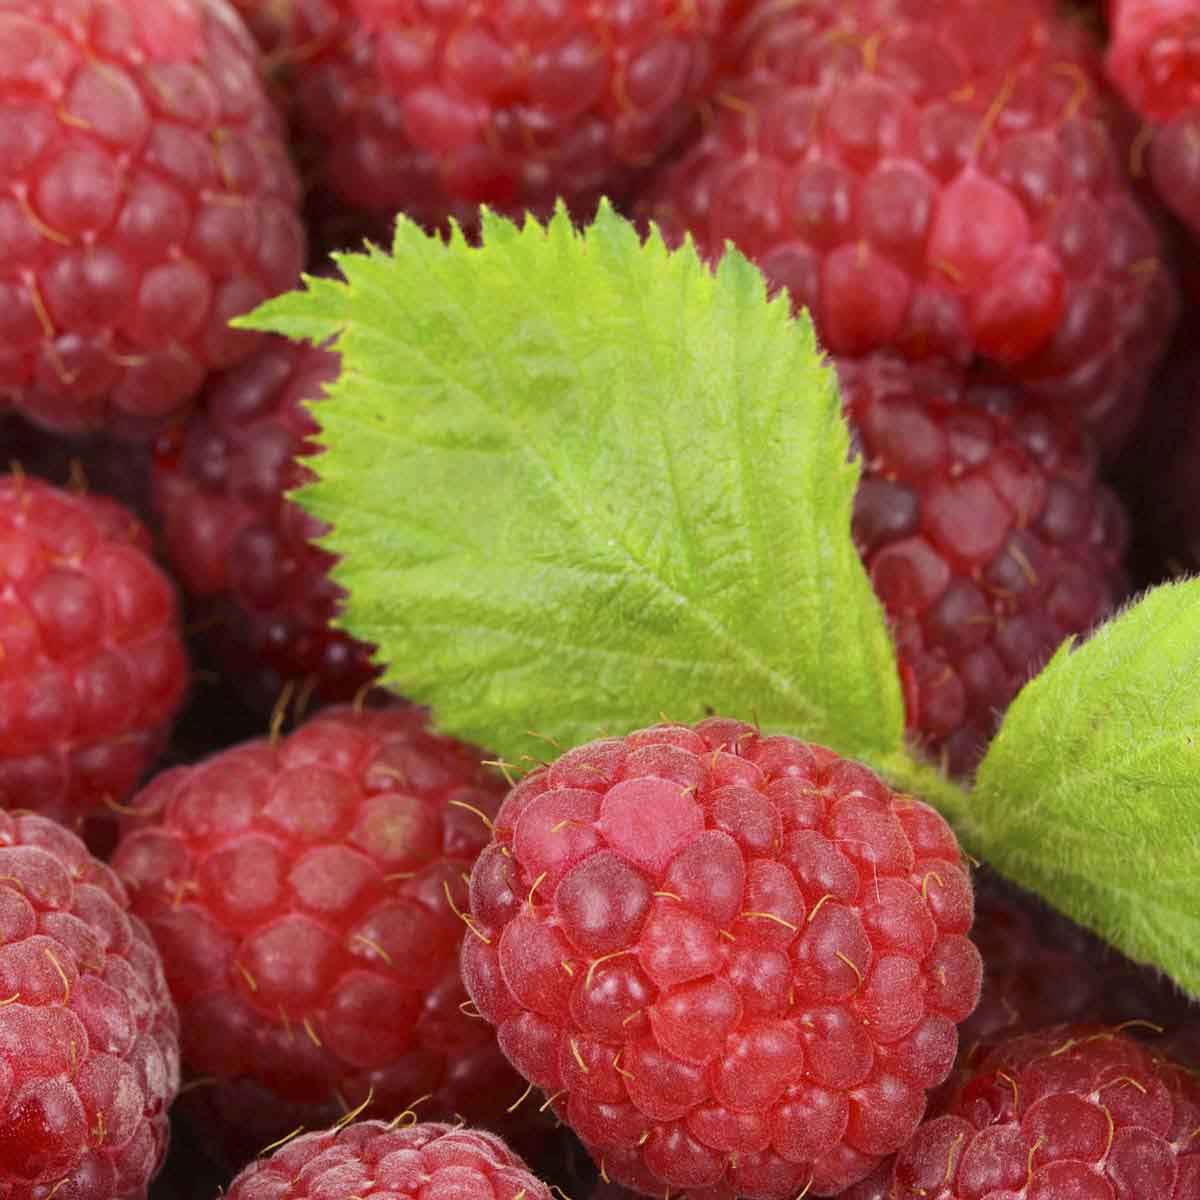 Fresh raspberries graced with raspberry leaf.